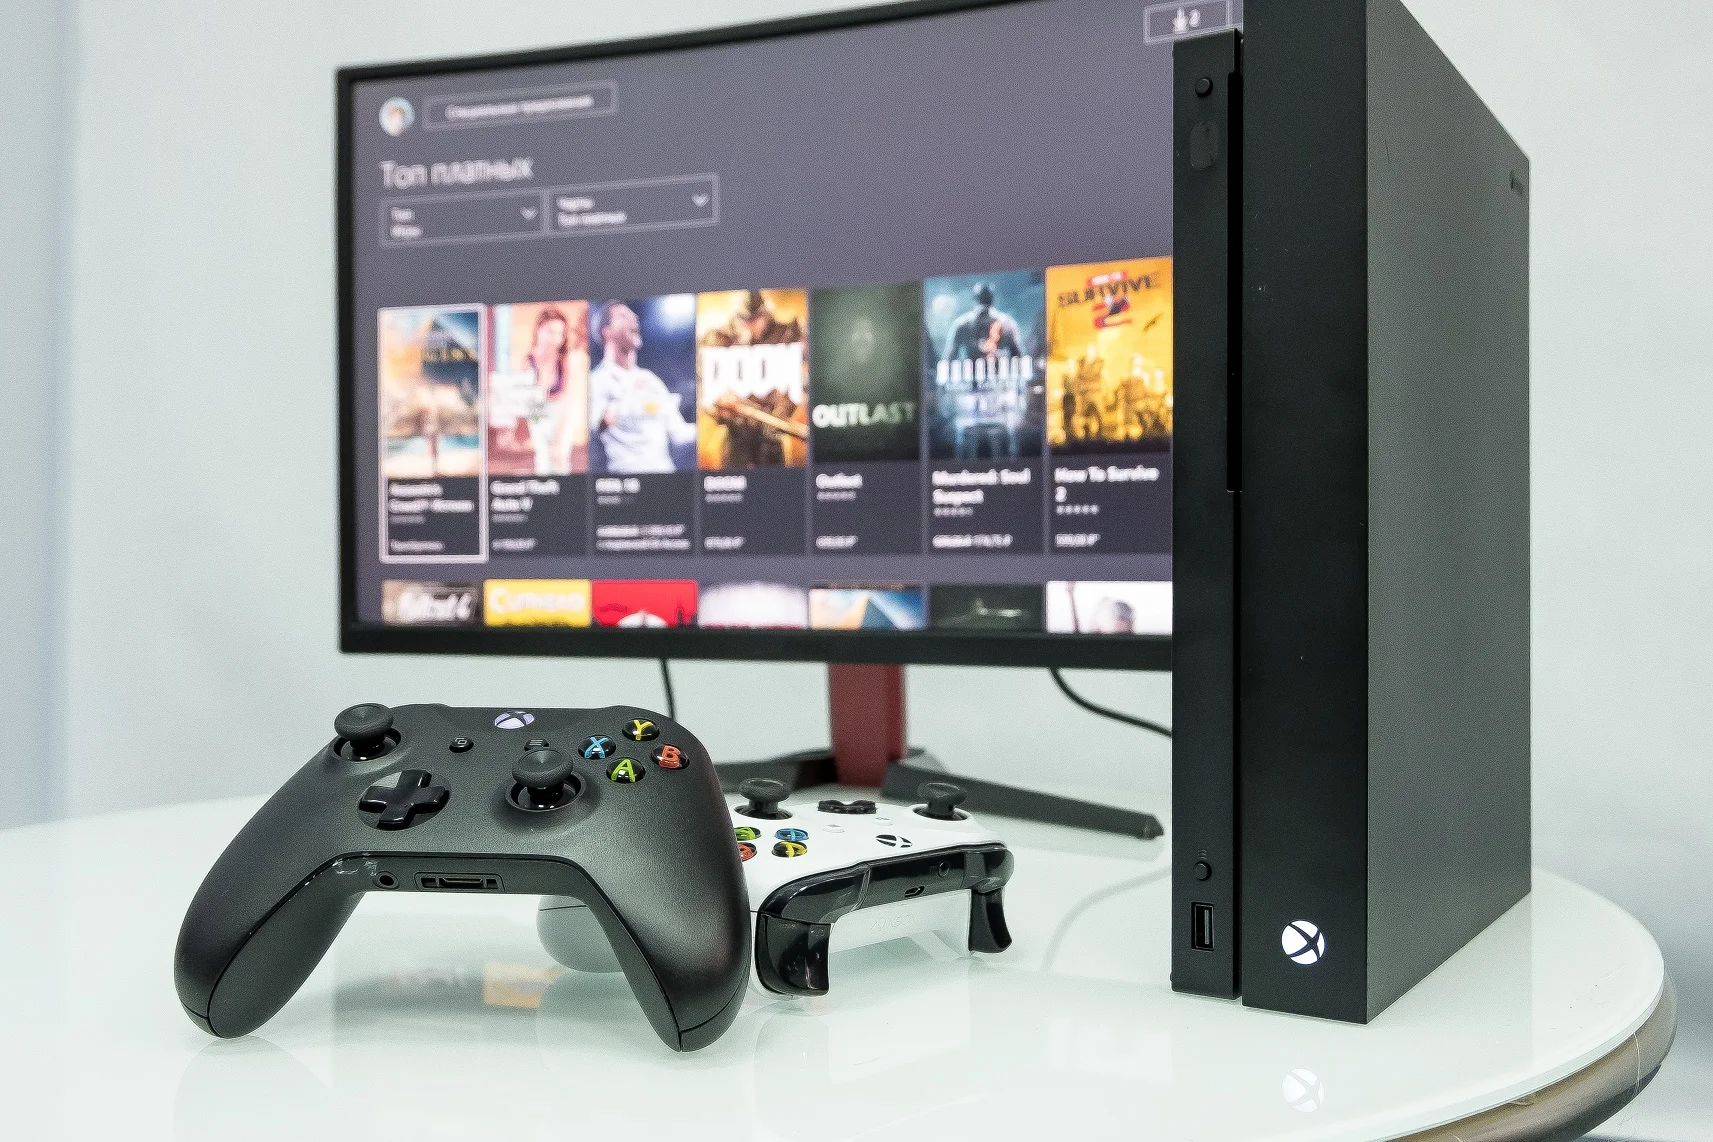 Обзор Xbox One X: Microsoft сделала очень крутую консоль. Надо брать? [+Видео] - фото 11